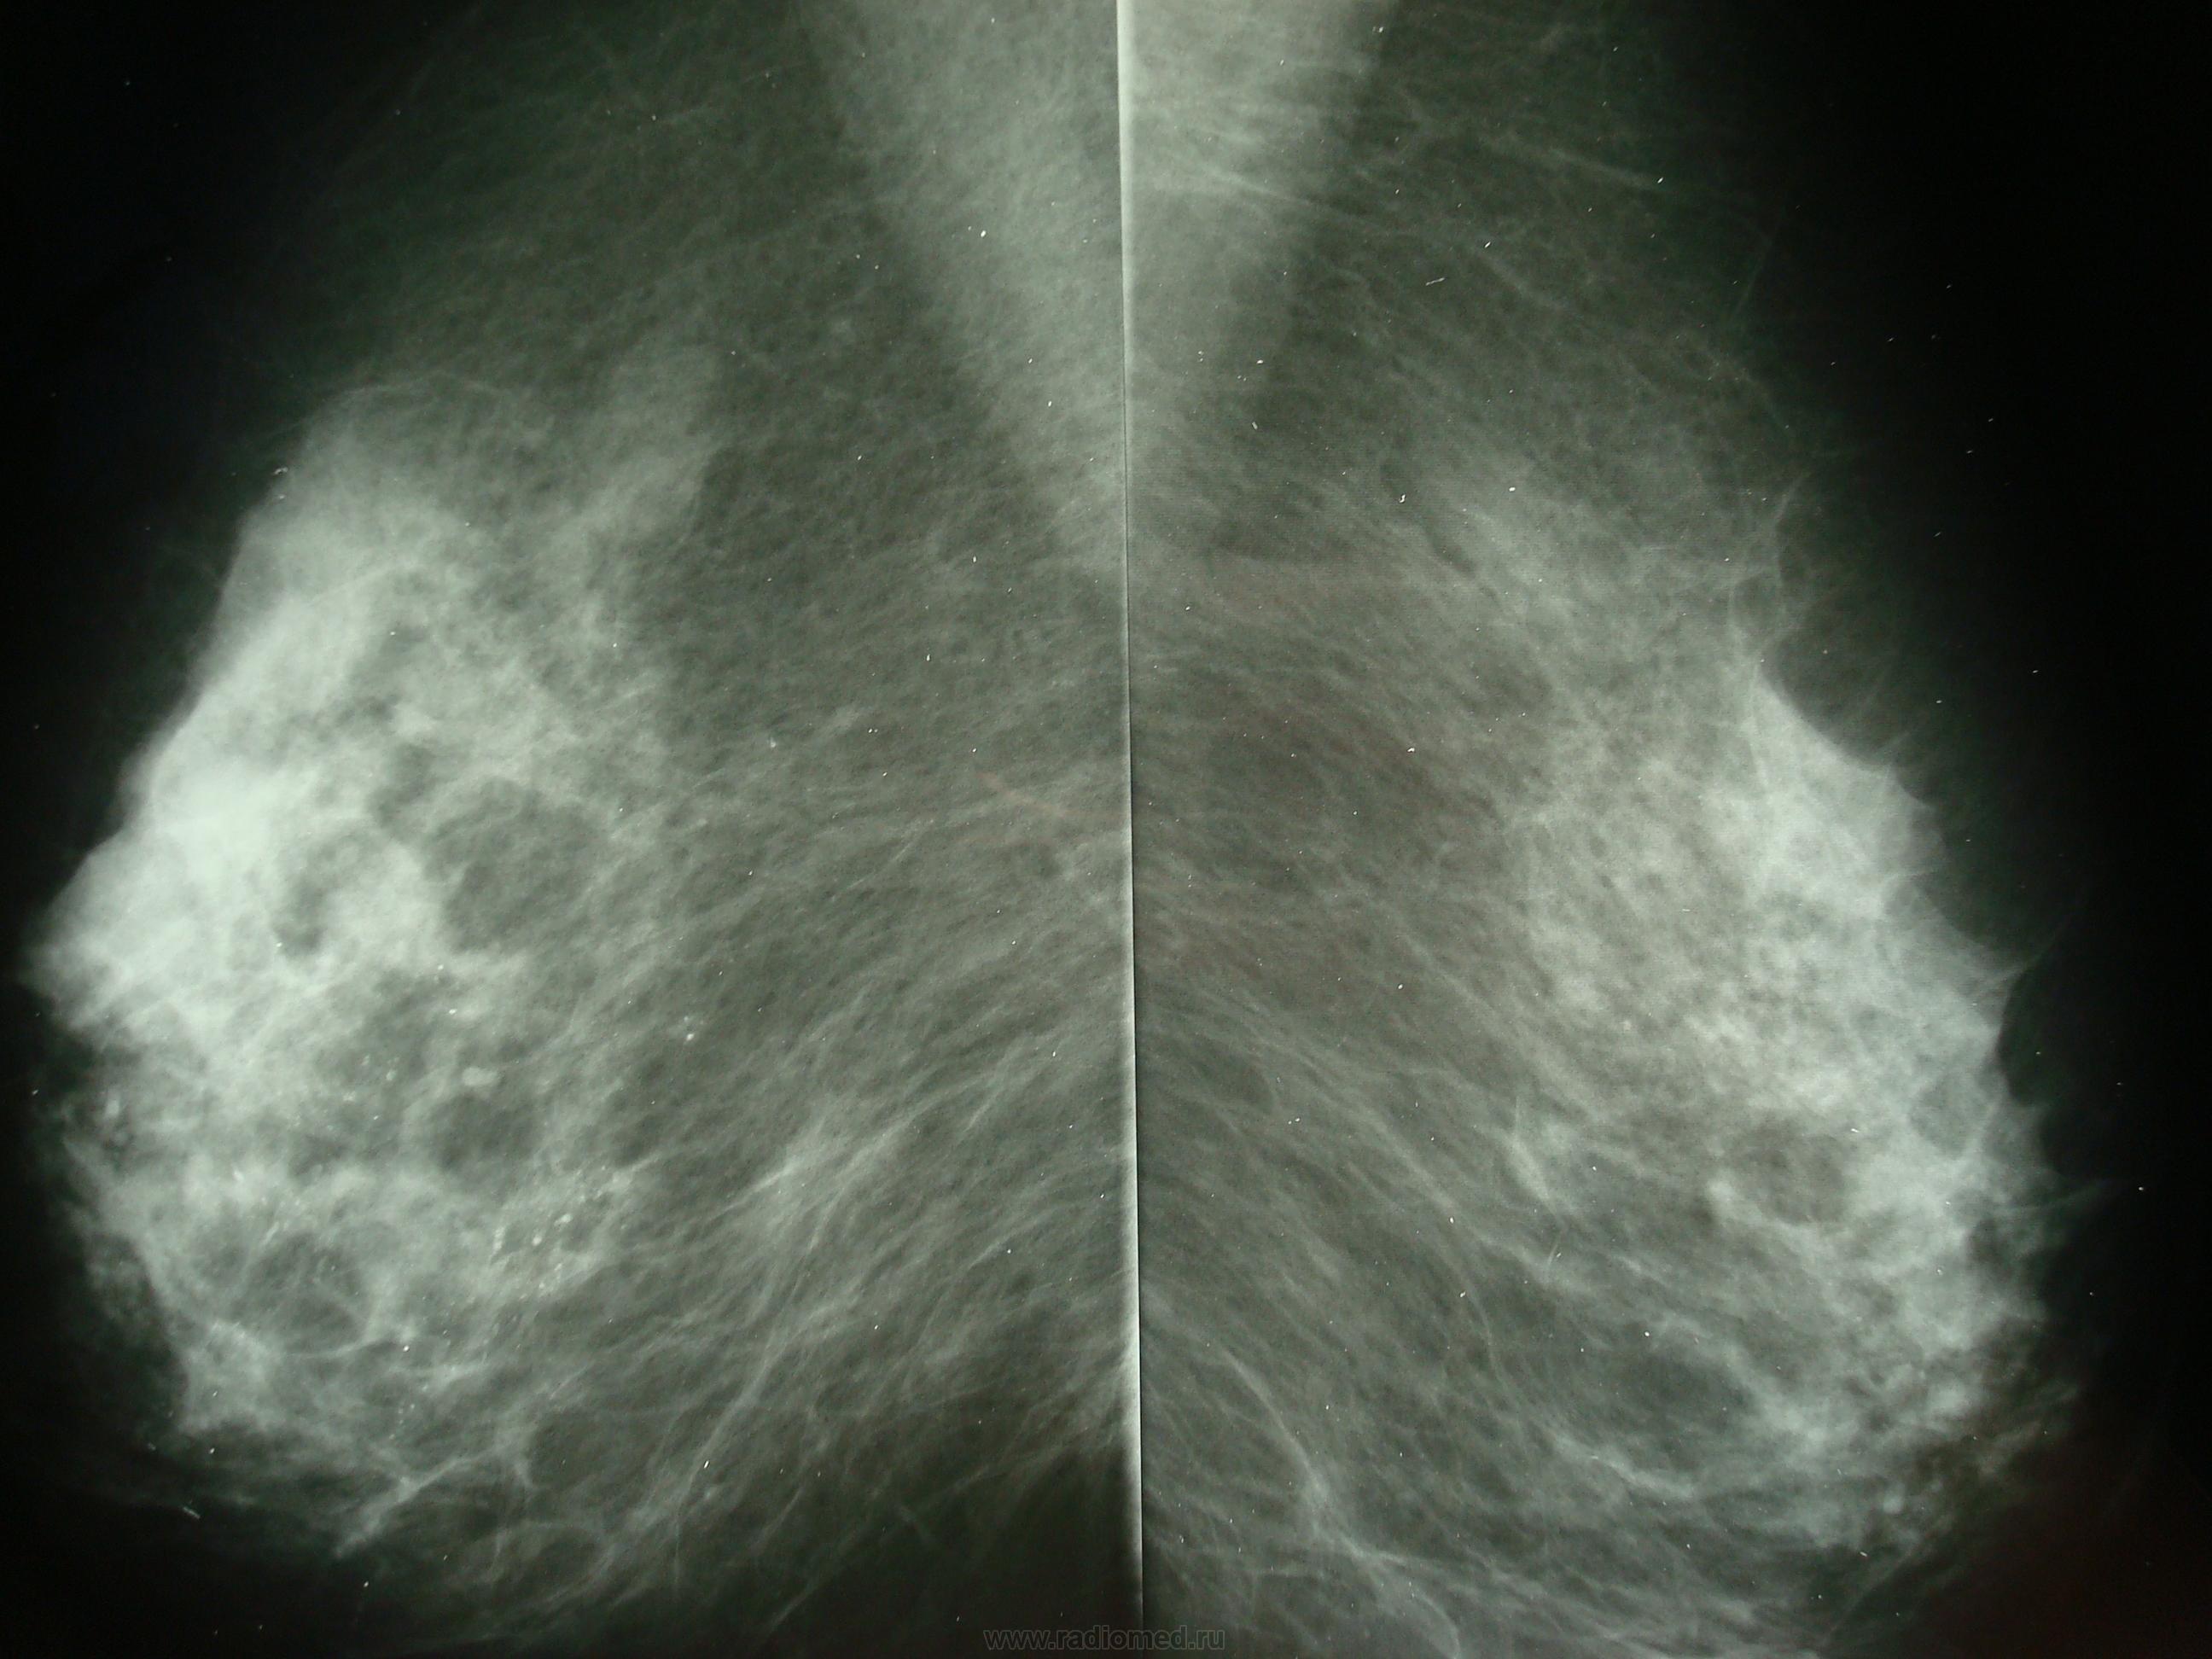 Bl rads 2. Маммография. Здоровый снимок маммографии. Симптом мышиного хвоста на маммографии.